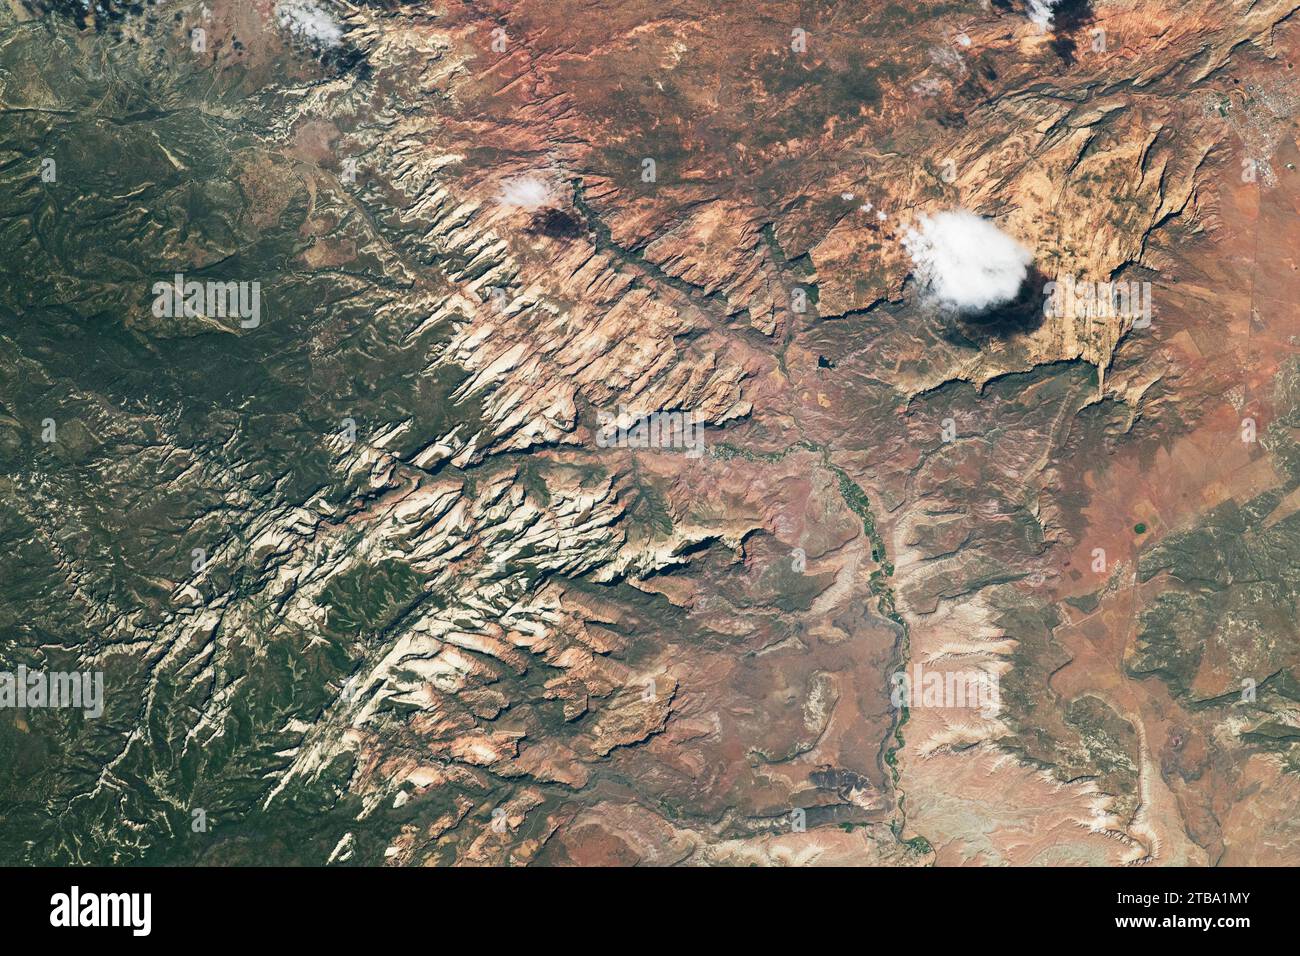 Helle Klippen, die sich durch die warmen Wüstentöne des Zion-Nationalparks im Südwesten Utahs ziehen. Stockfoto